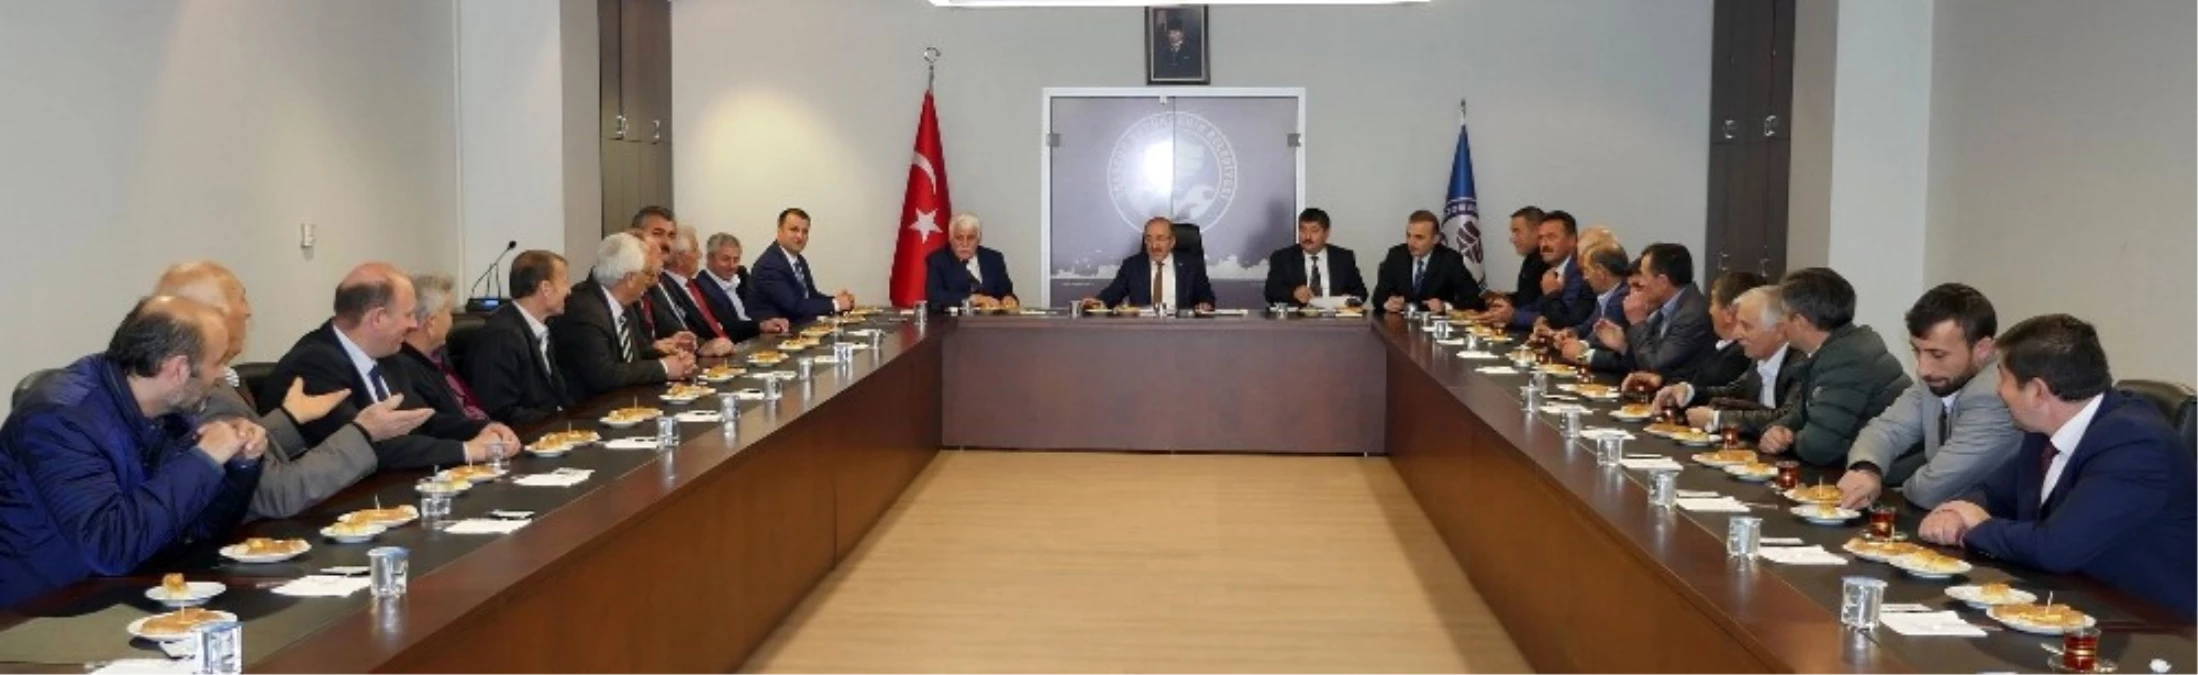 Başkan Gümrükçüoğlu, Yomra Muhtarlarıyla İstişare Toplantısı Gerçekleştirdi